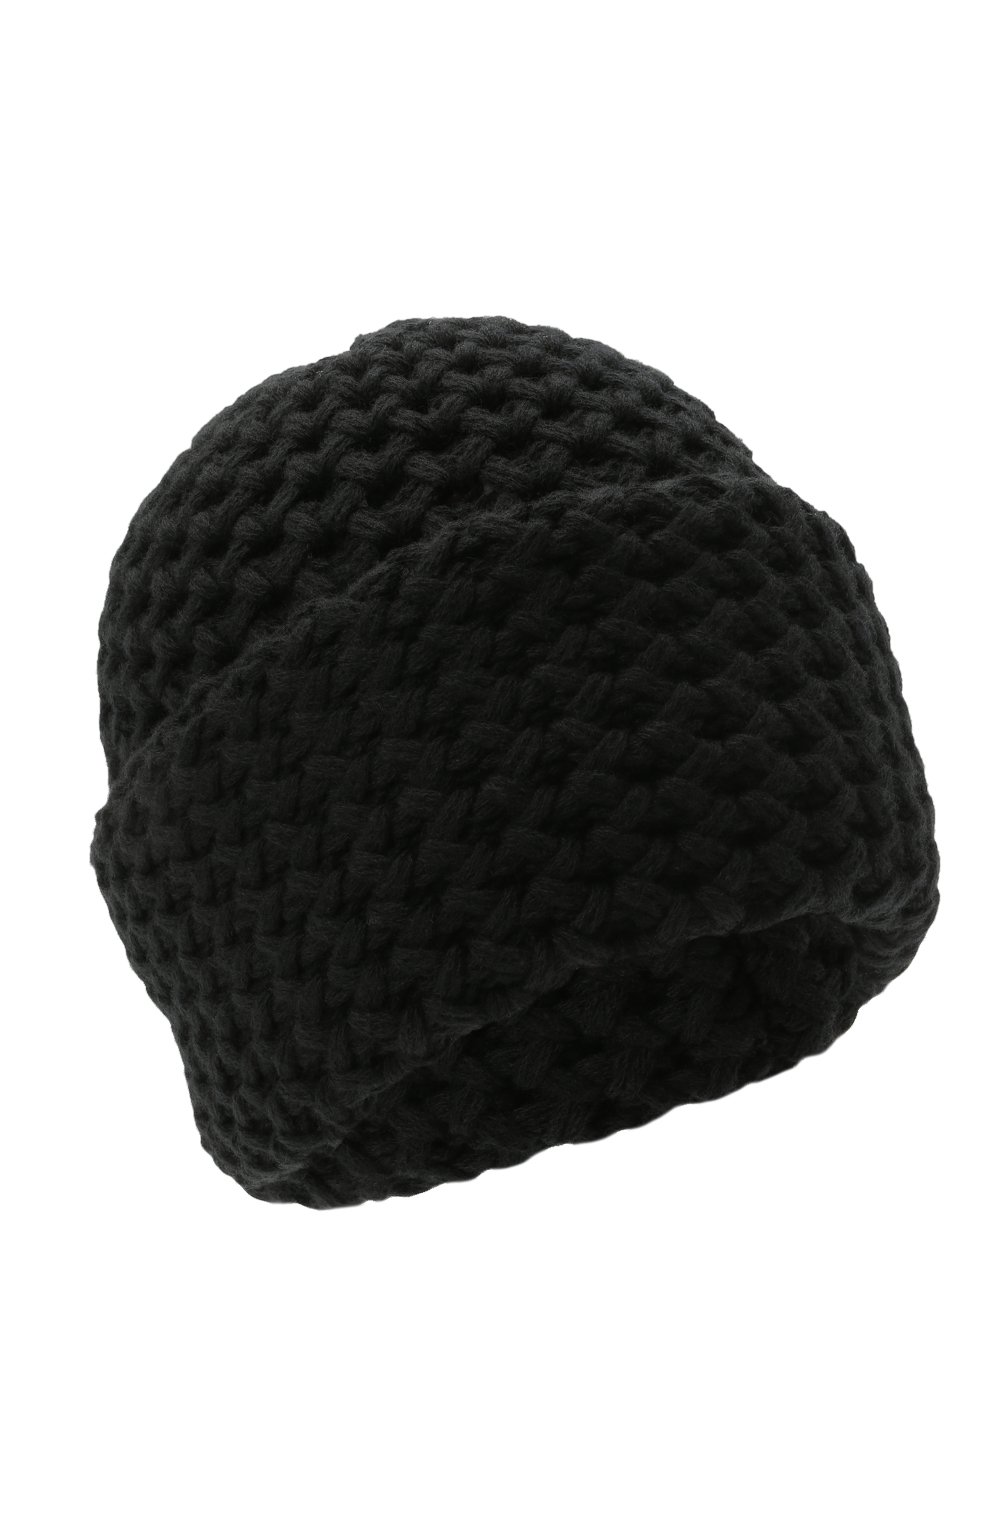 Женская кашемировая шапка INVERNI черного цвета, арт. 4232 CM | Фото 1 (Материал: Текстиль, Кашемир, Шерсть)